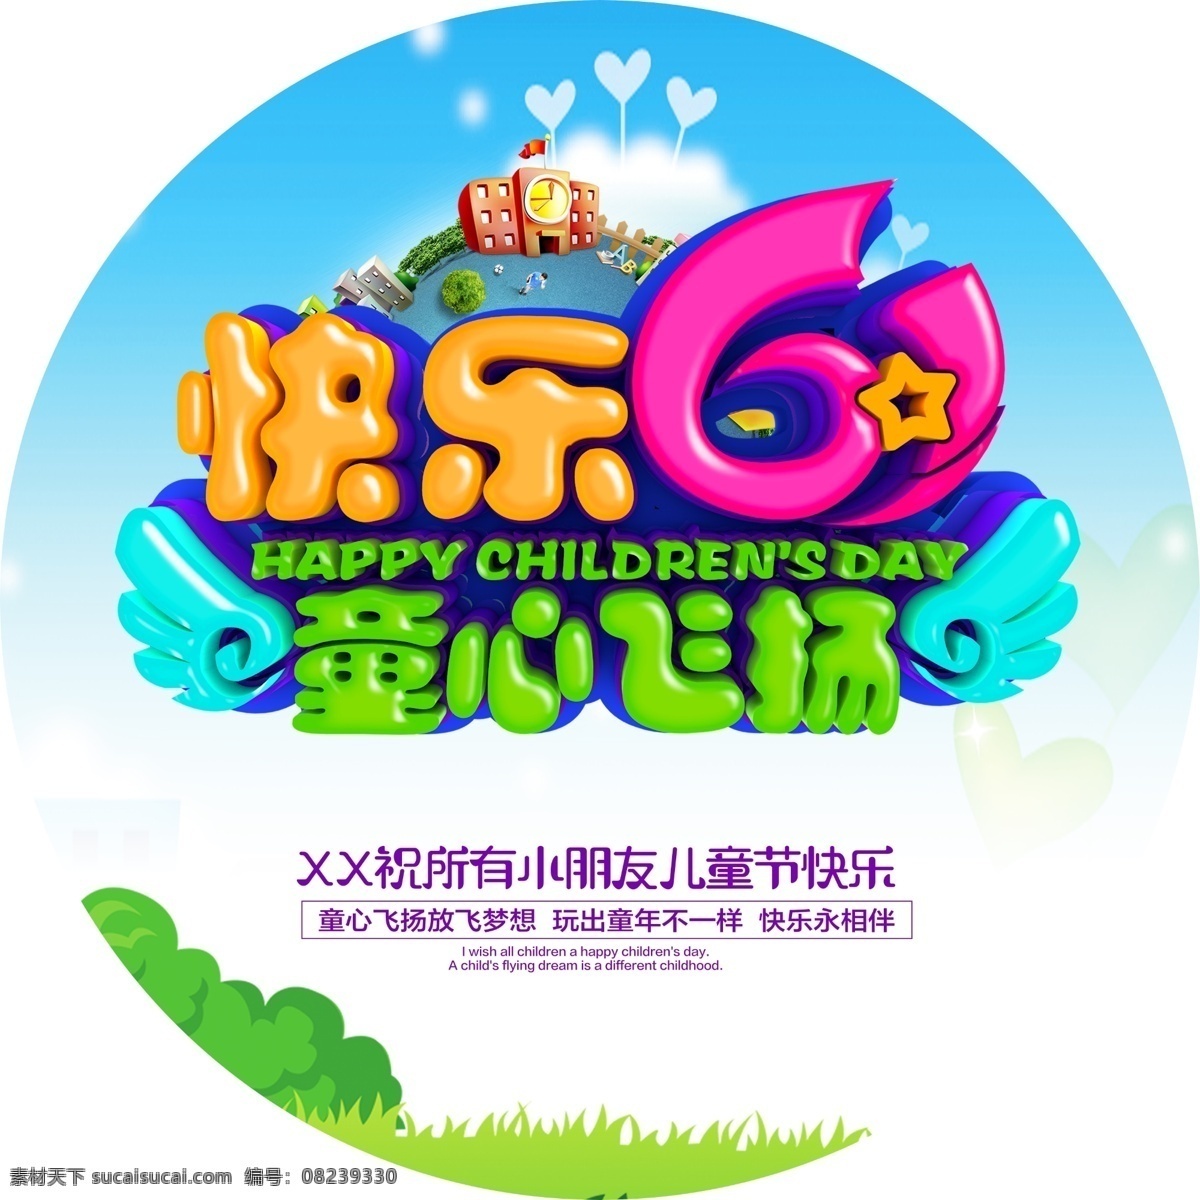 卡通 六一儿童节 门 头 贴 61 儿童节 儿童节背景 儿童节促销 儿童节快乐 儿童节门头 儿童节素材 儿童节宣传 国际儿童节 快乐童年 展板模板